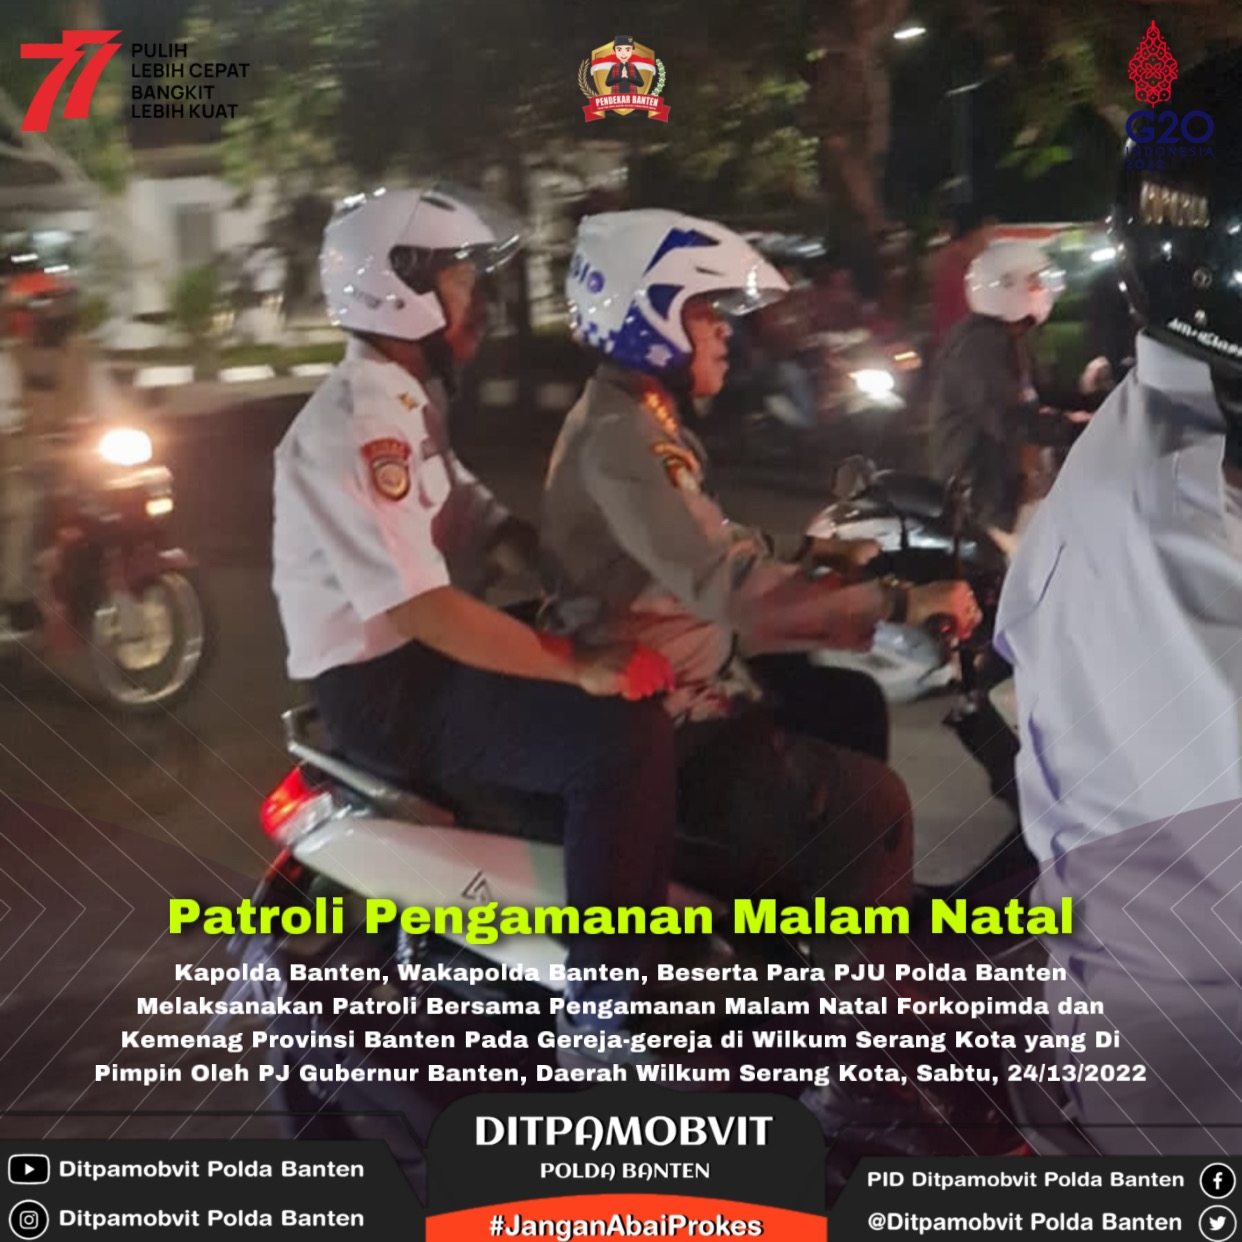 Cek Pengamanan Malam Natal, Dirpamobvit Polda Banten Dampingi Kapolda Konvoi Gunakan Sepeda Motor